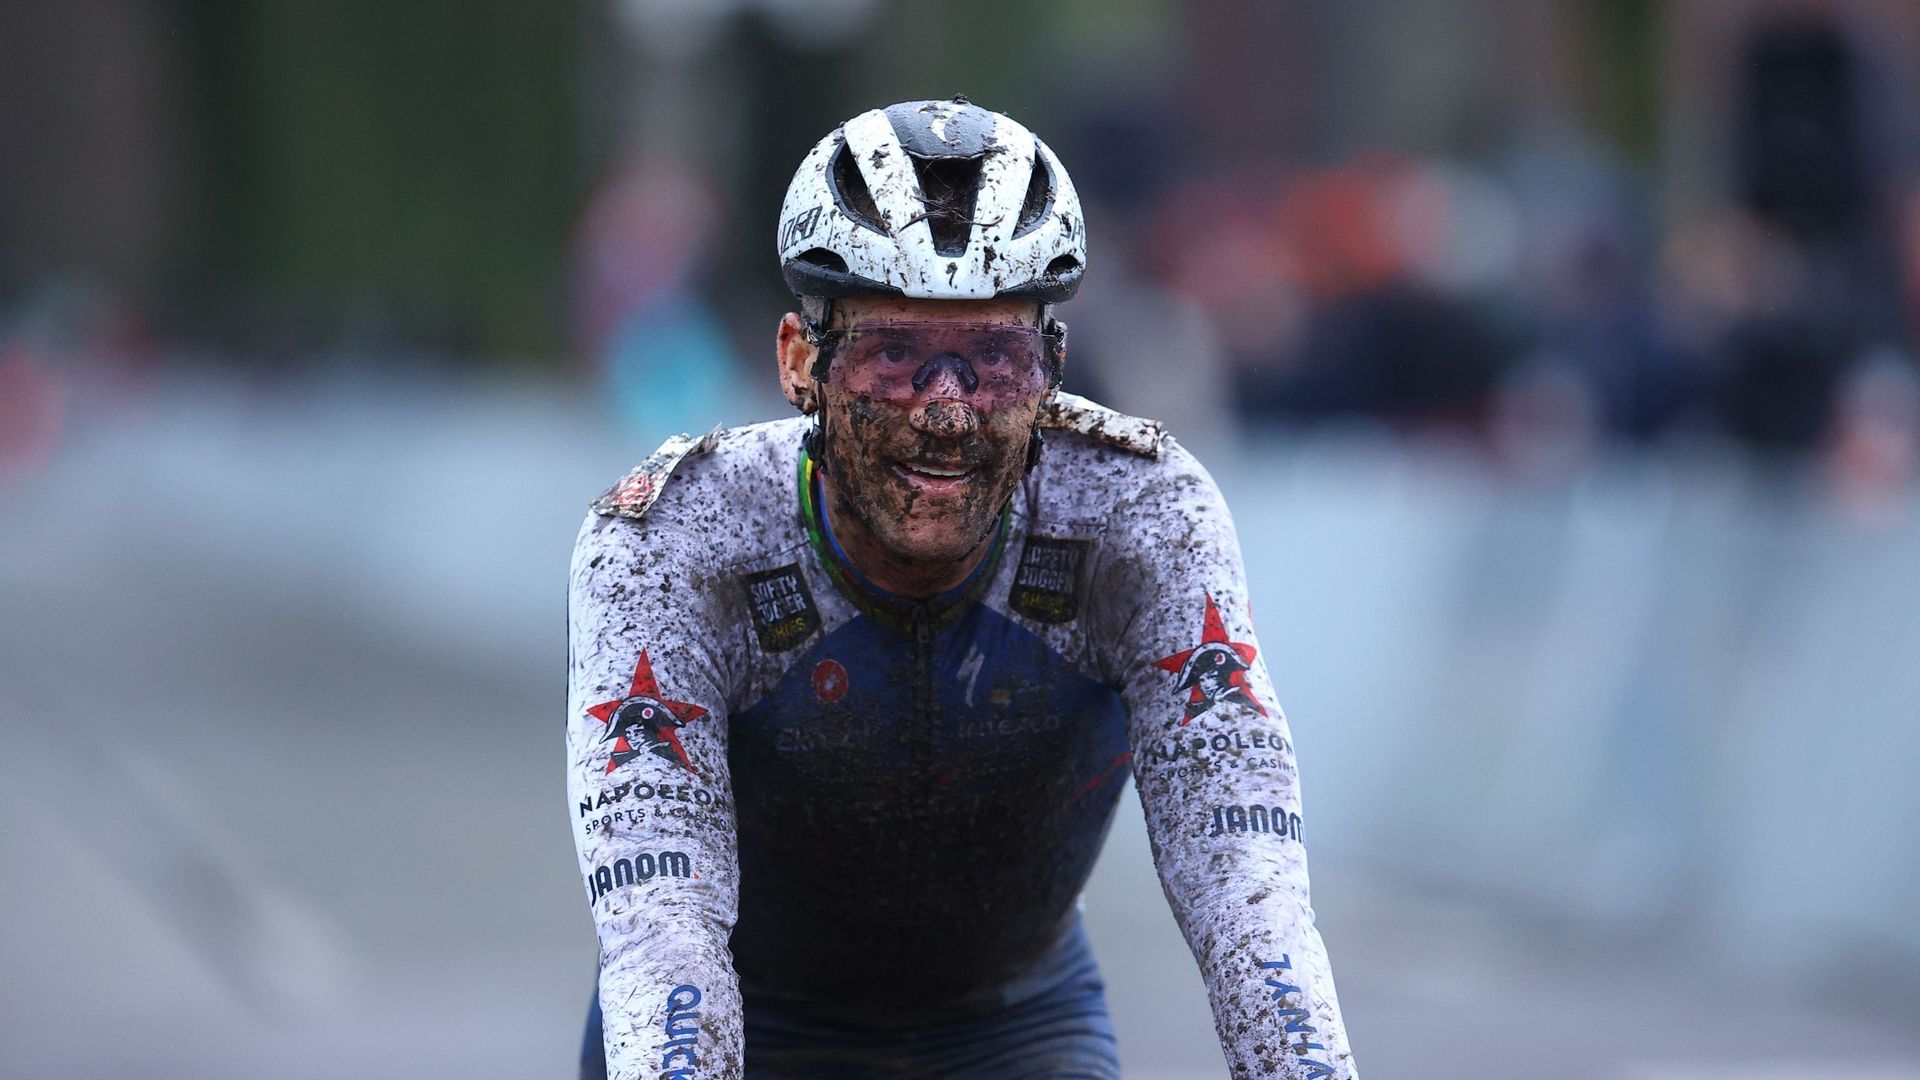 Zdenek Stybar à l’arrivée du cyclocross de Loenhout le 30 décembre 2022.